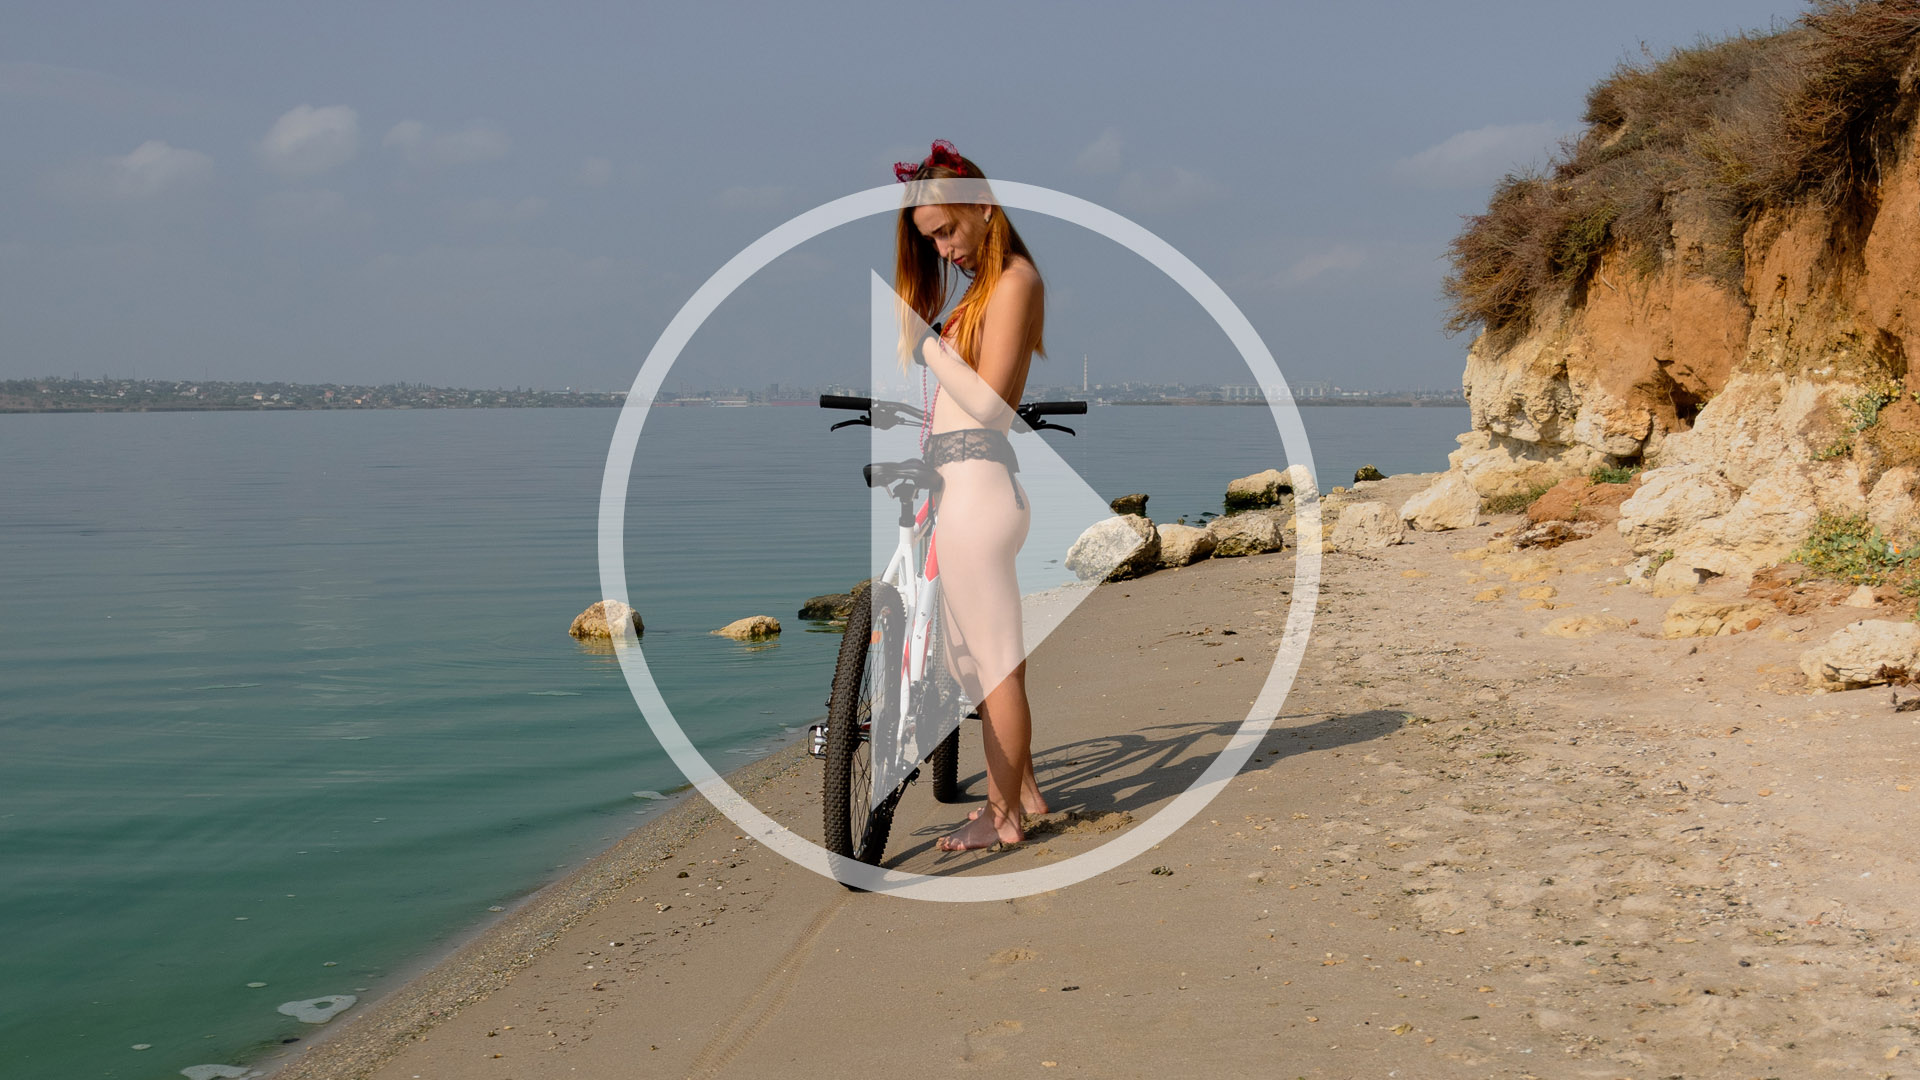 Відео бекстейдж ню фотосесії з велосипедом. Фото Пабло Інкогніто